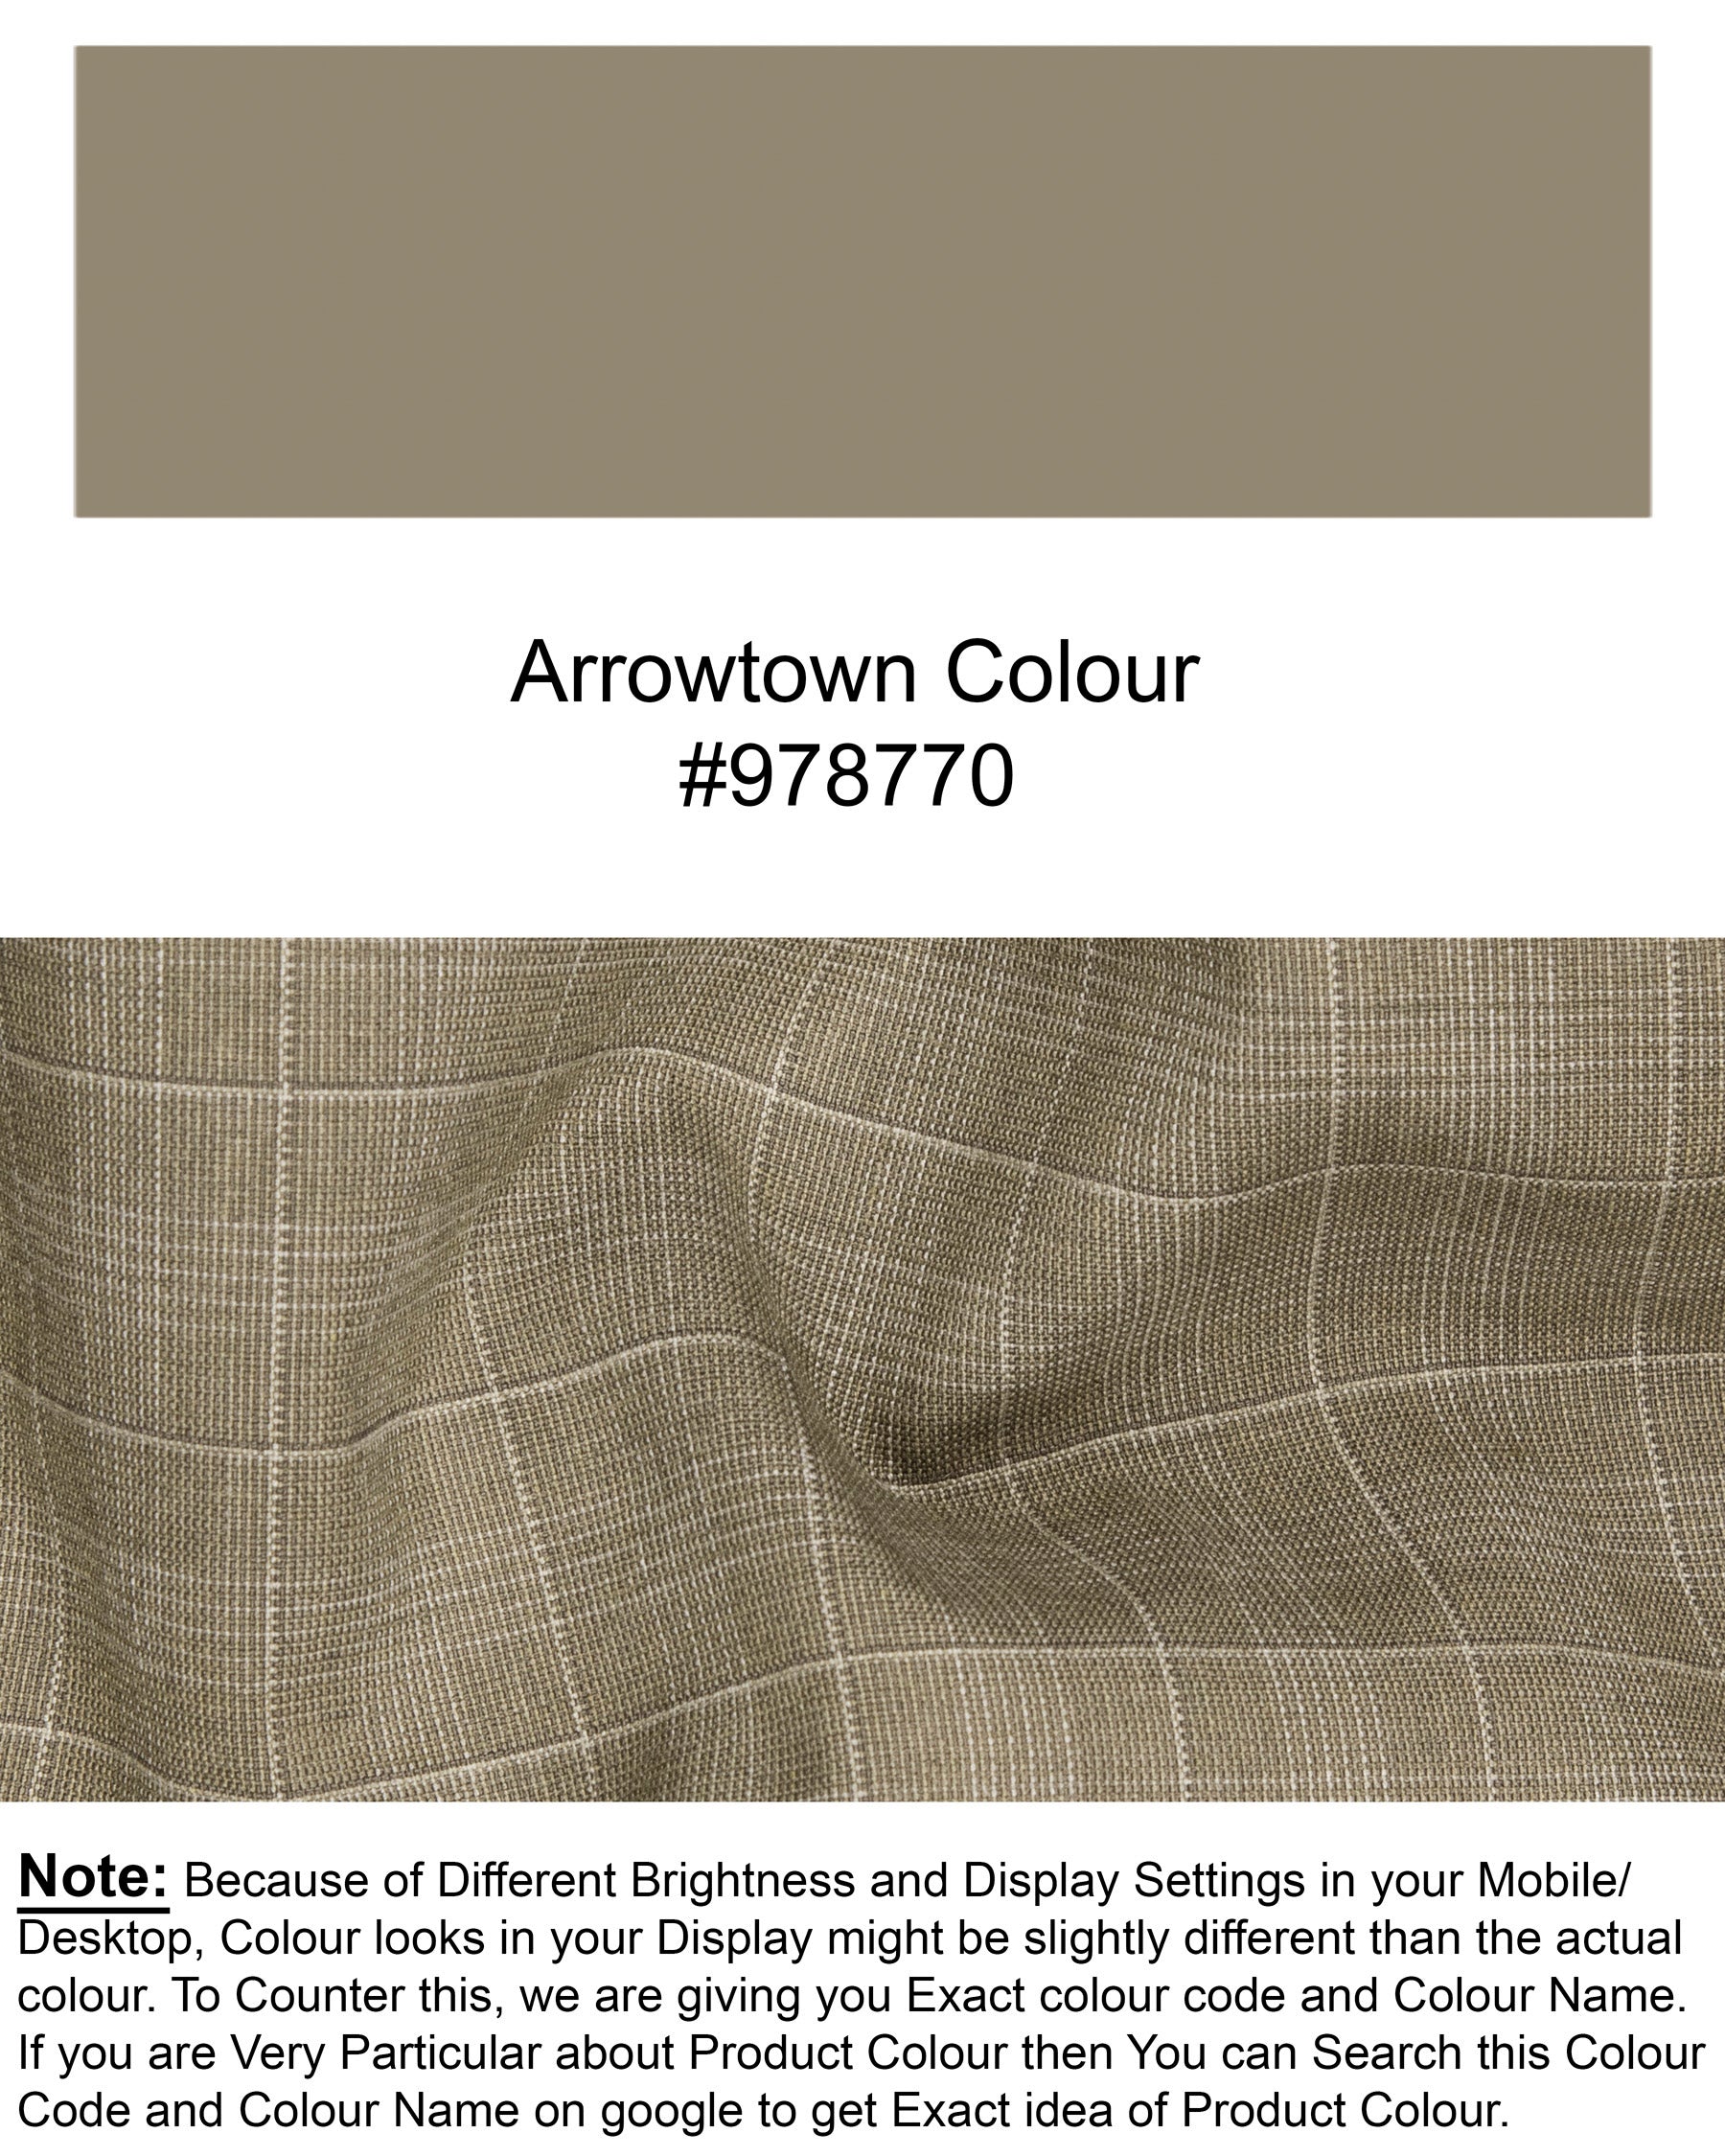 Arrowtown Brown Plaid Waistcoat V1285-36, V1285-38, V1285-40, V1285-42, V1285-44, V1285-46, V1285-48, V1285-50, V1285-52, V1285-54, V1285-56, V1285-58, V1285-60